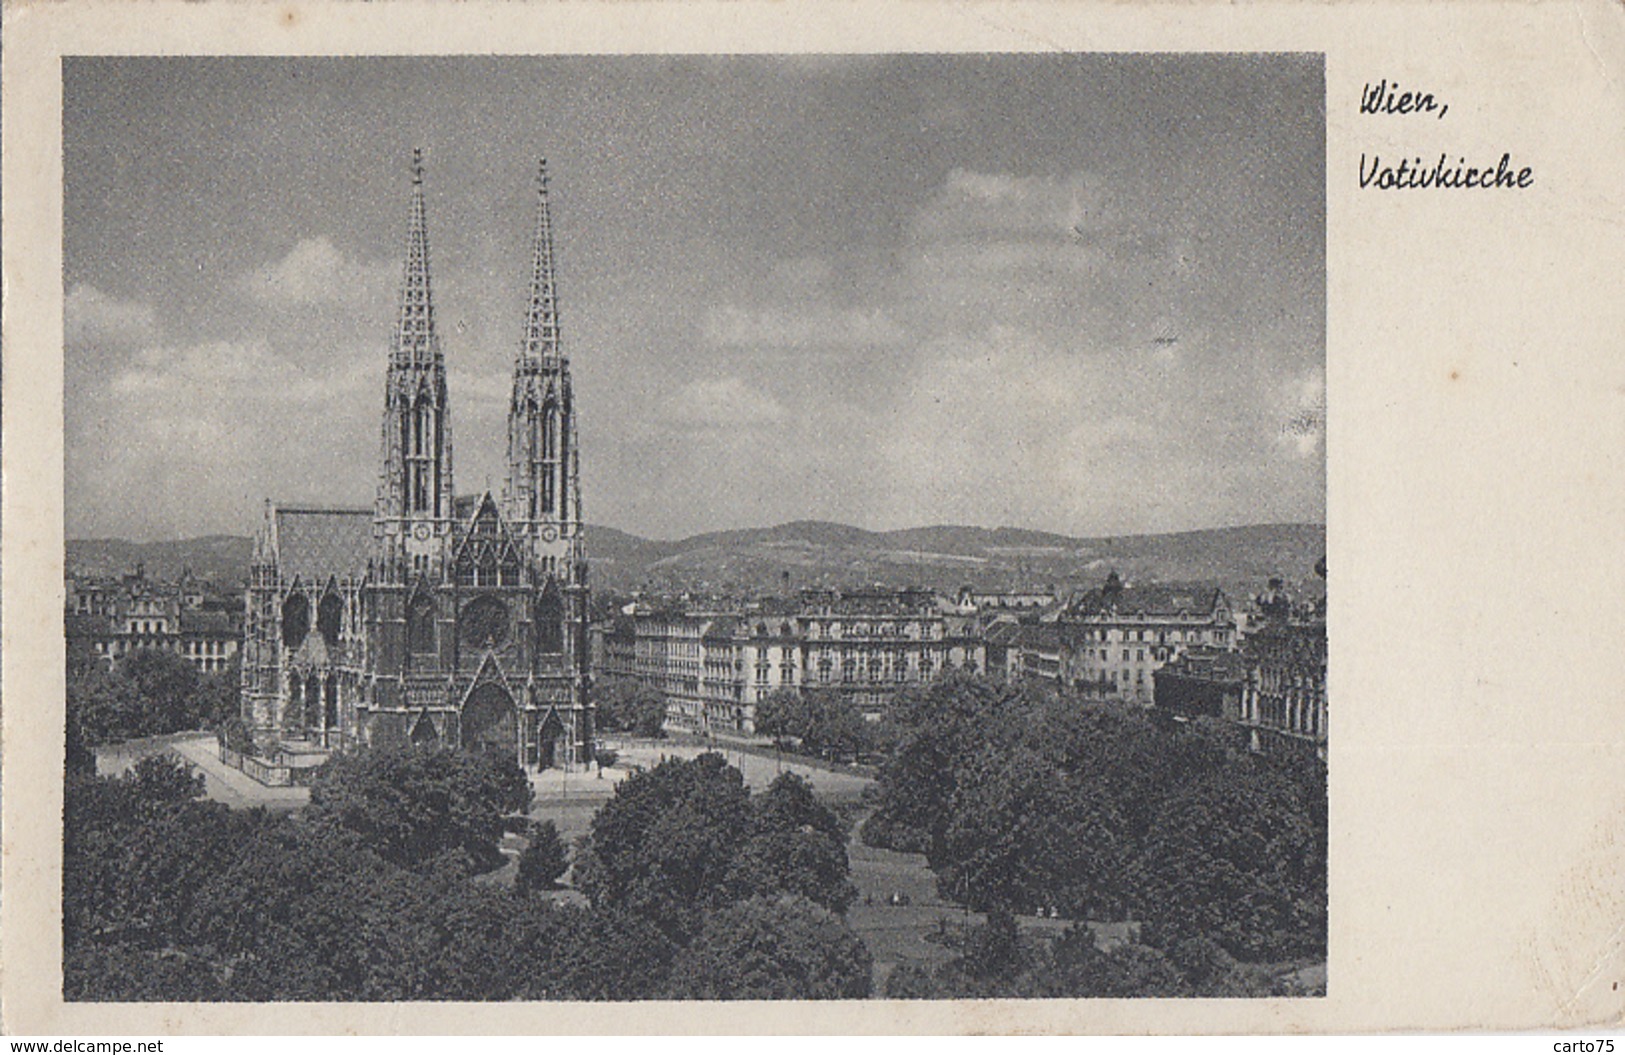 Autriche - Wien - Votivkirche - Postmarked Poste Aux Armées 1949 - Au Château Du Pré D'Auge La Boissière 14 - Iglesias